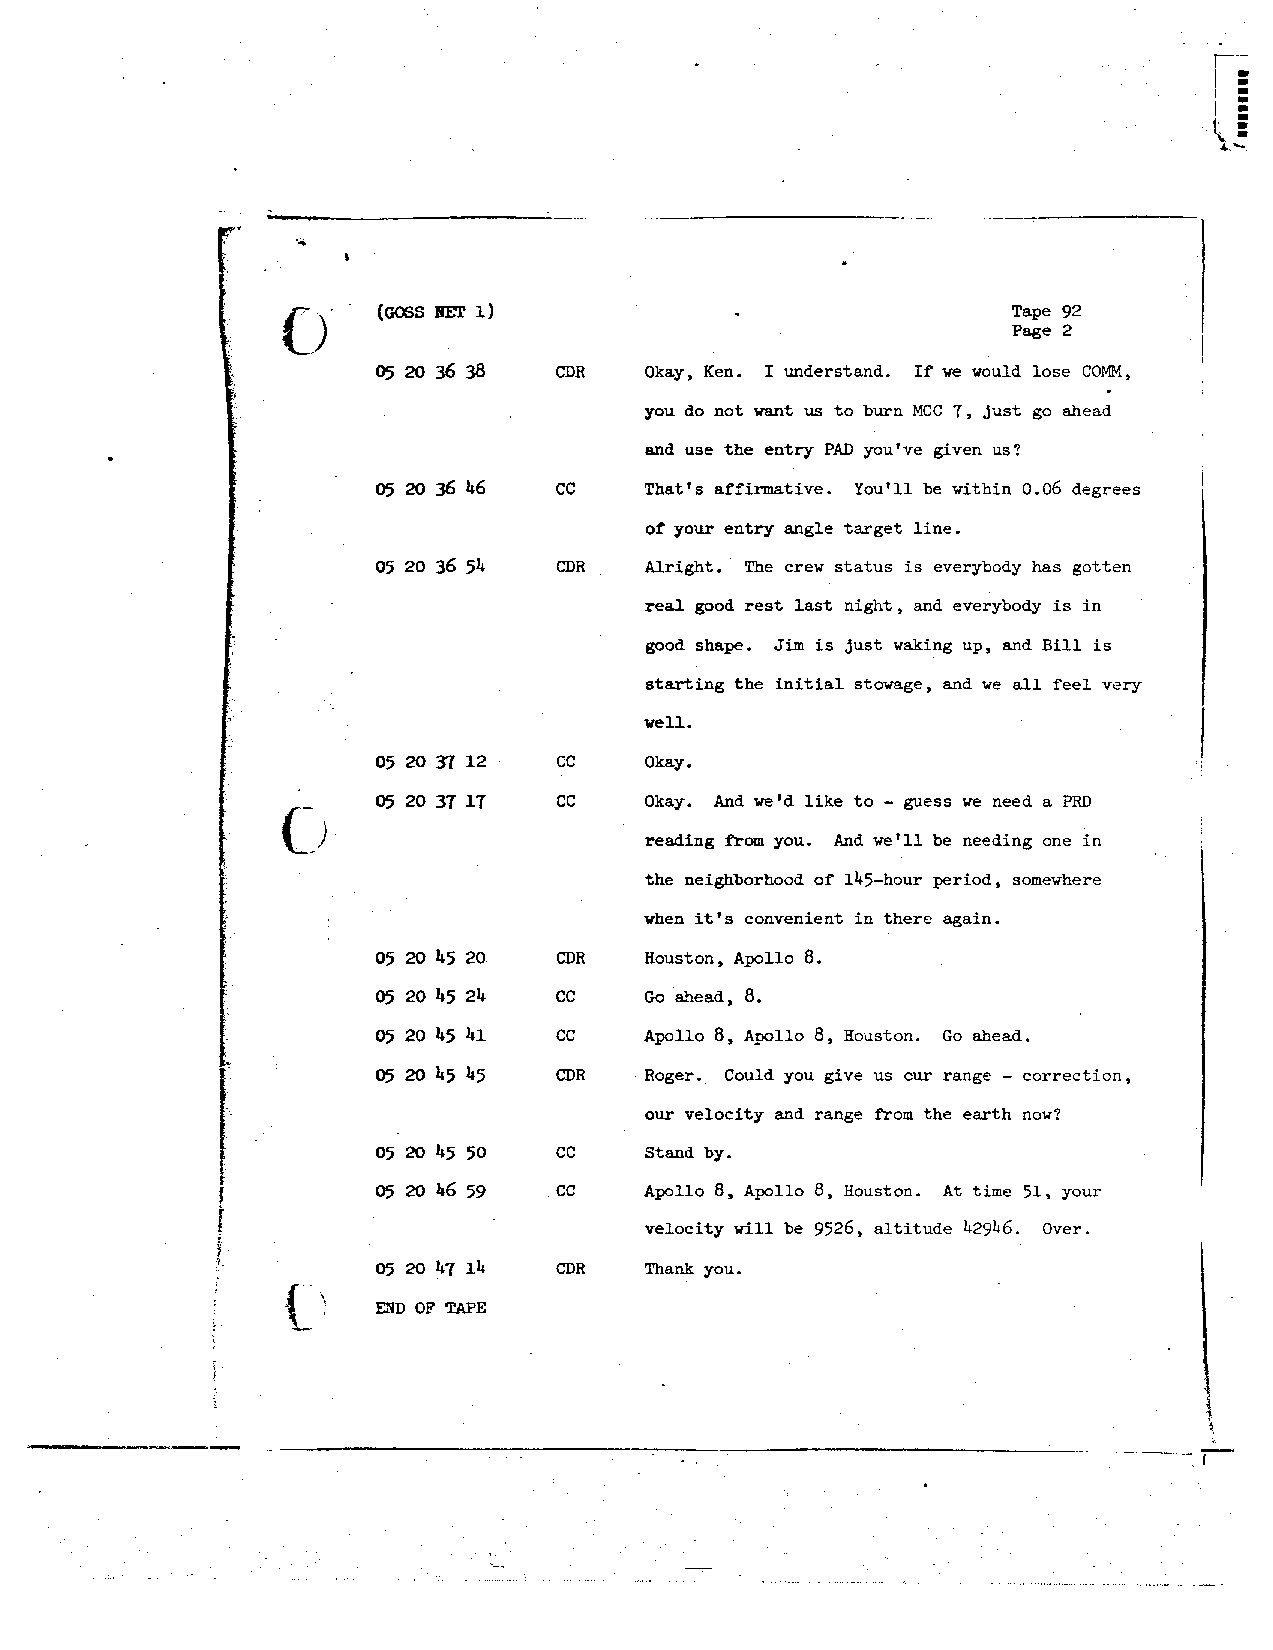 Page 732 of Apollo 8’s original transcript